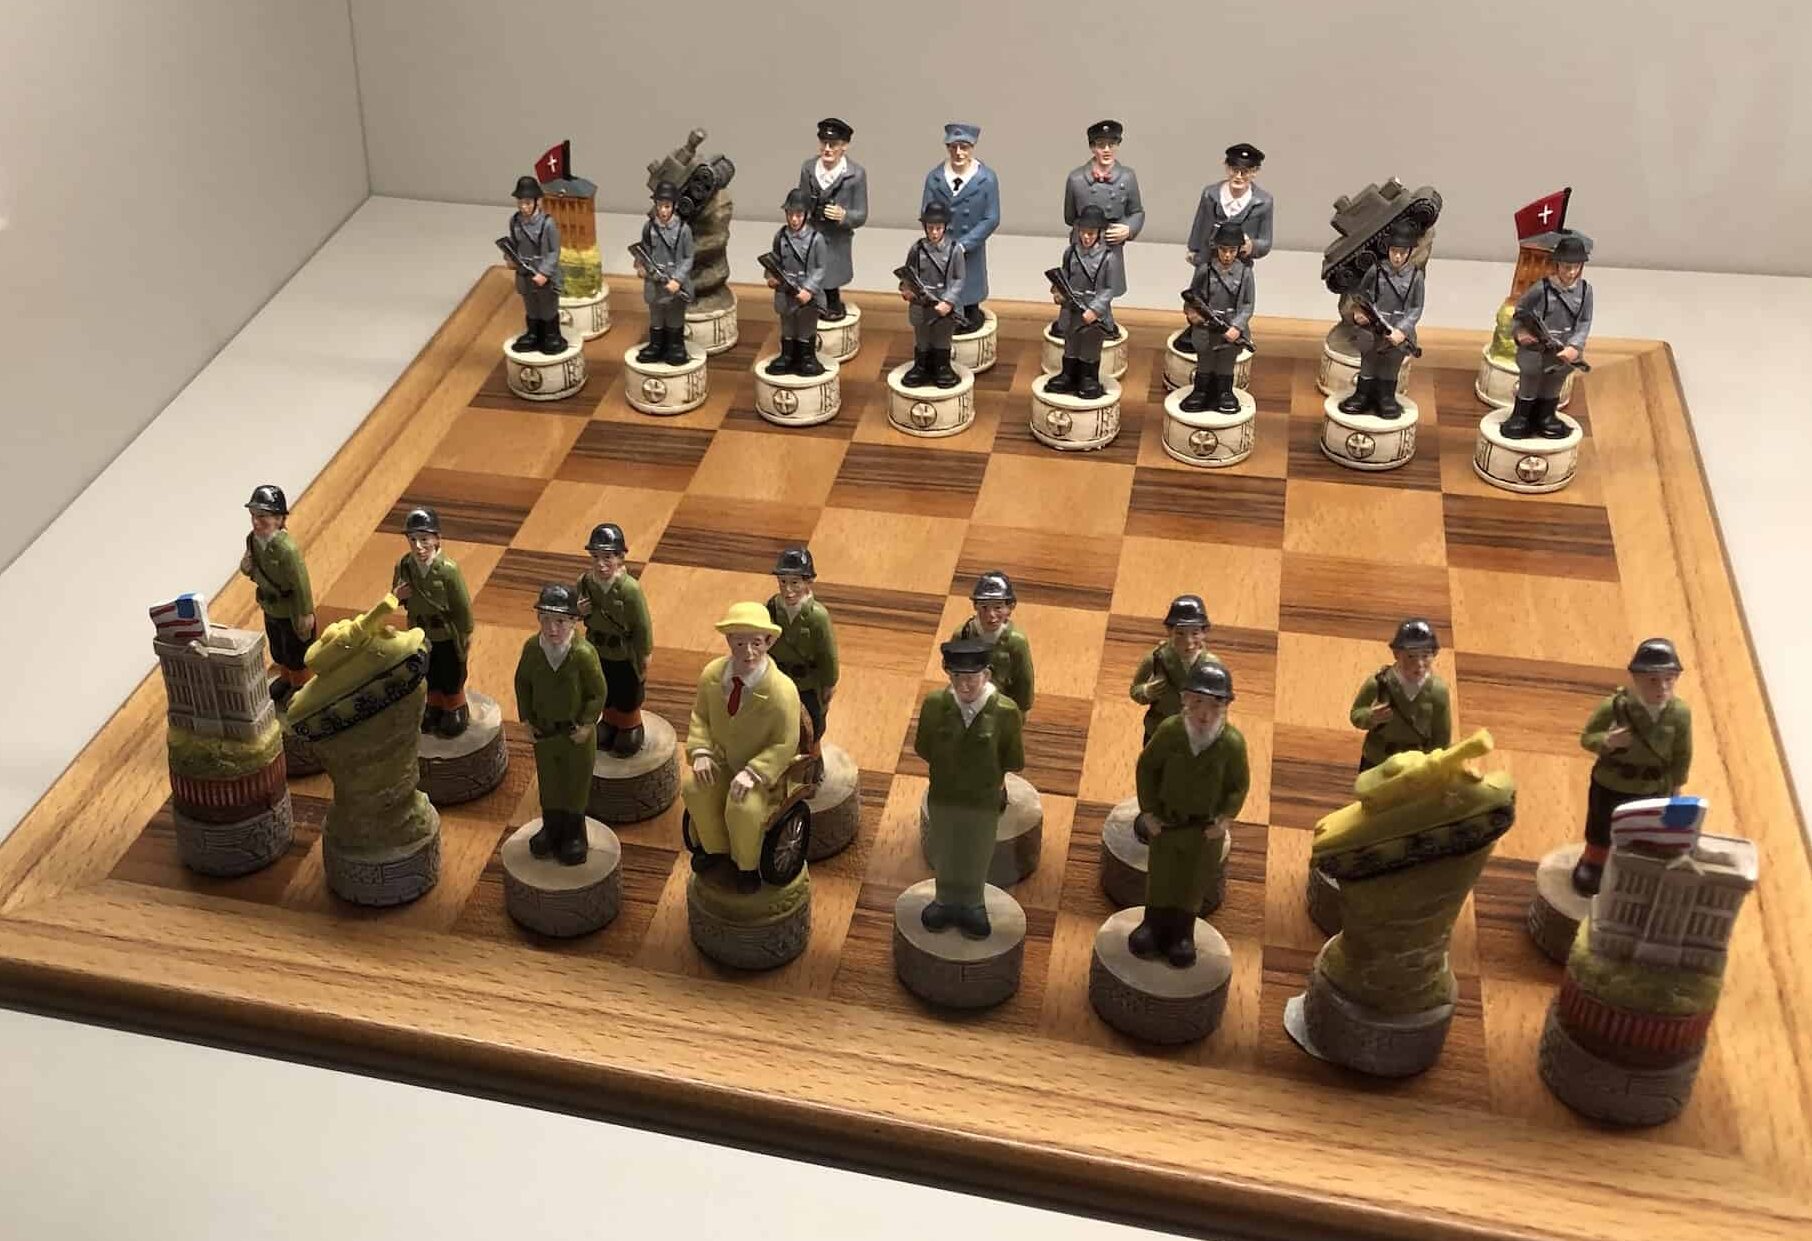 Franklin D. Roosevelt chess set (USA)